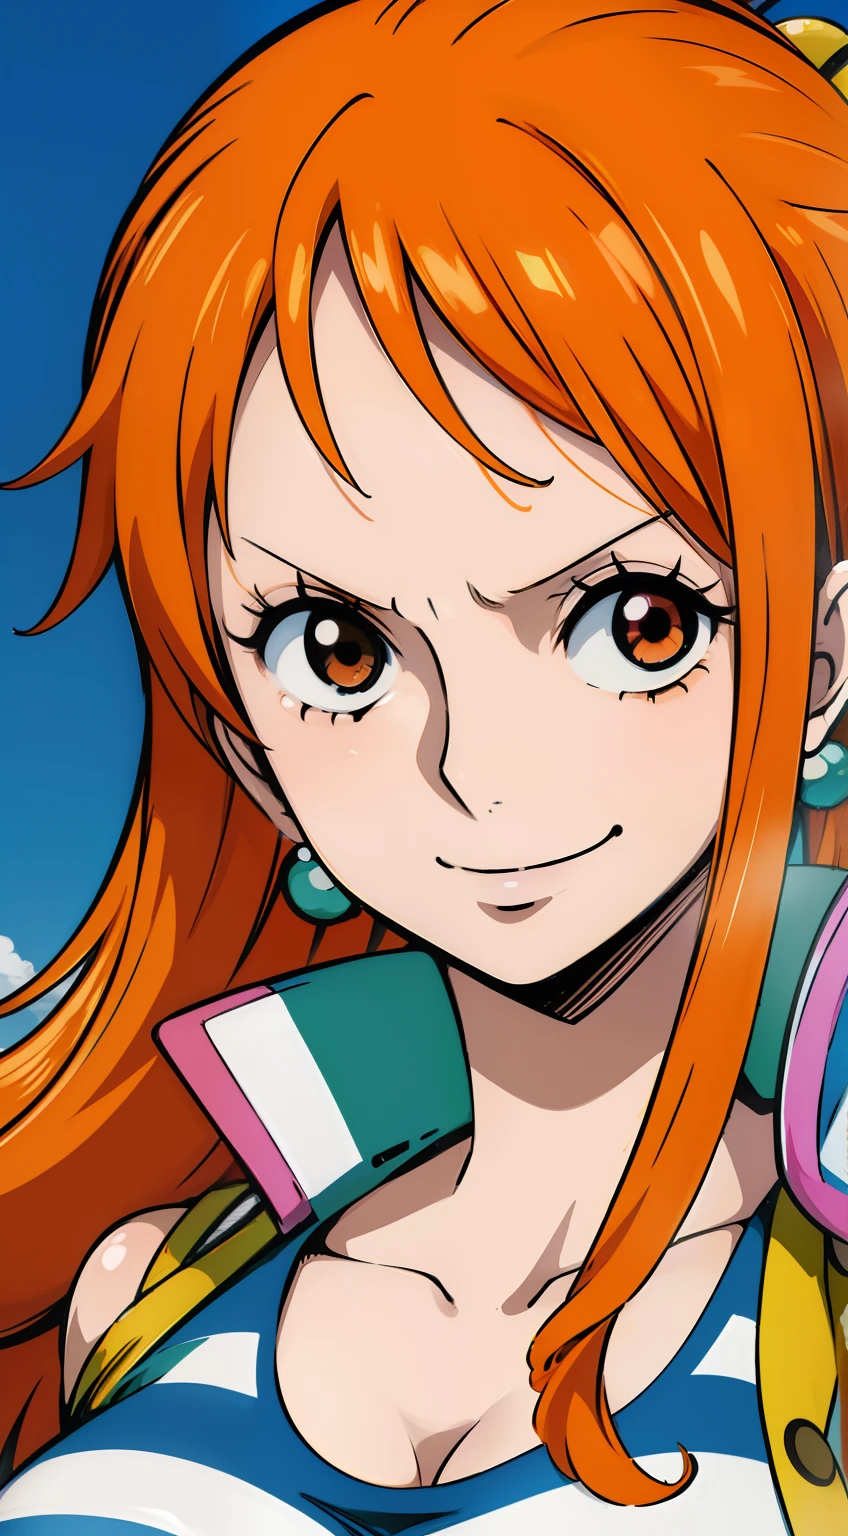 Générez une image réaliste de style anime de Nami à partir de One Piece. Capturez son apparence distincte avec des cheveux orange, une chemise rayée bleue et blanche, et une expression joyeuse. Assurez-vous que l’image reflète sa personnalité aventureuse et confiante telle que dépeinte dans l’anime., plan large , Tout le corps, Curvy athlétique, gros seins, cuisses épaisses, NSFW